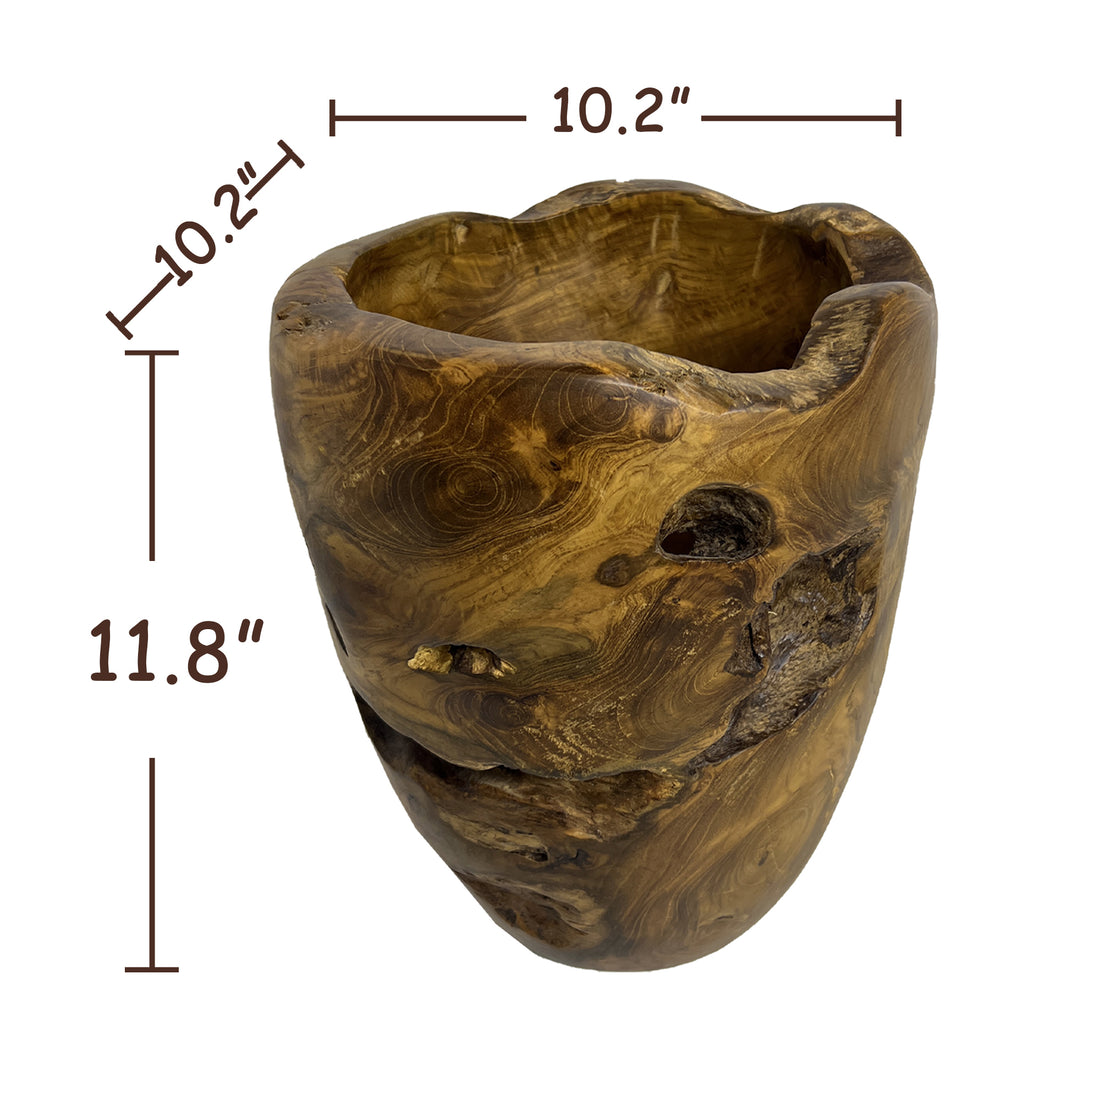 Bahama Teak Bowl &amp; Vase (10.2&quot; x 10.2&quot; x 11.8&quot;)